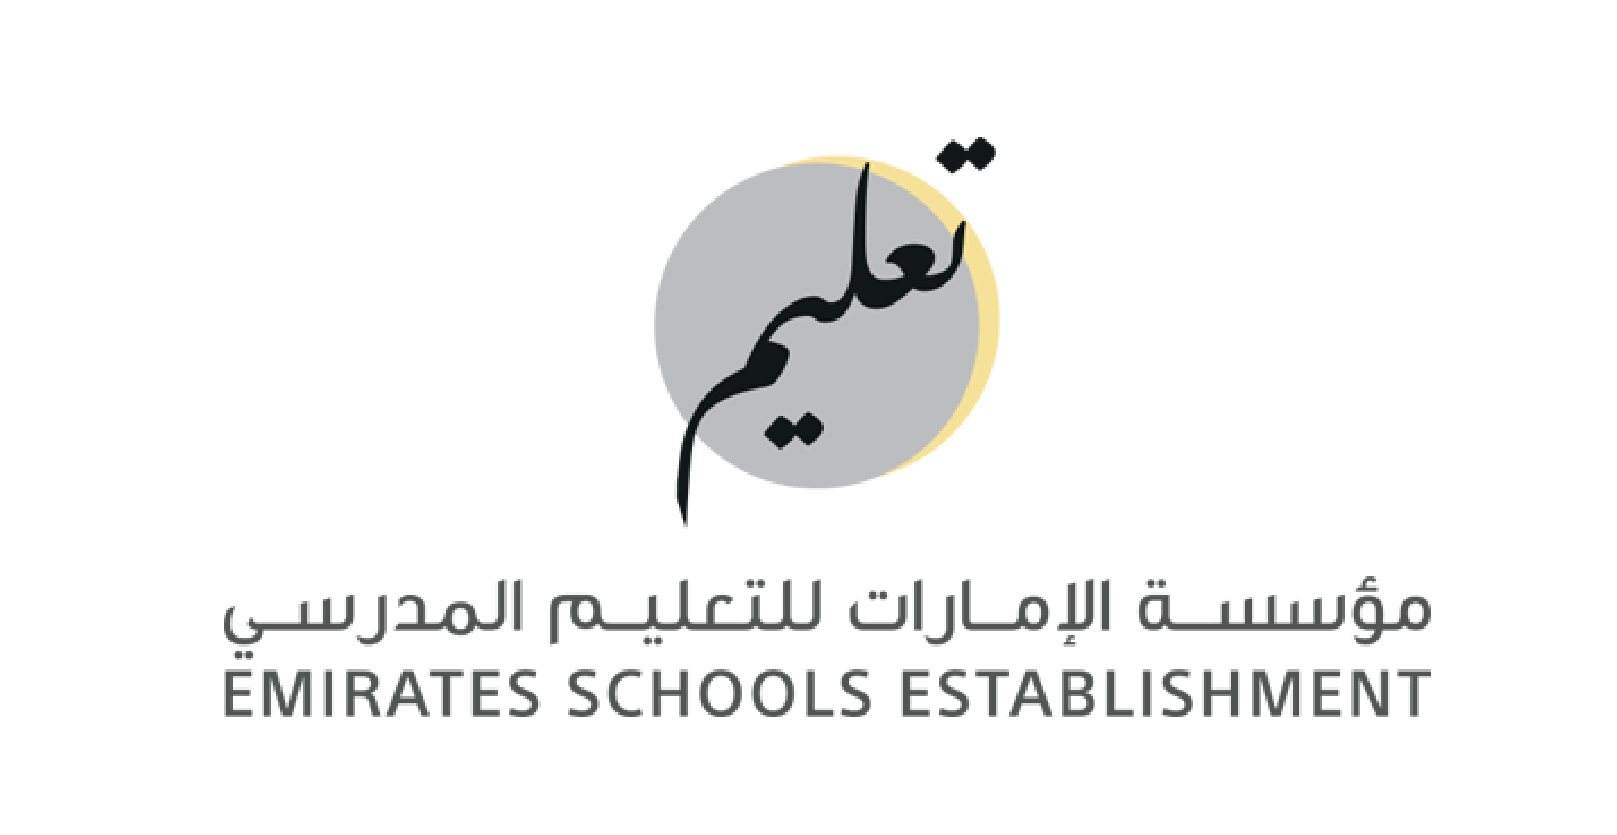 Emirates School Establishment (ESE)